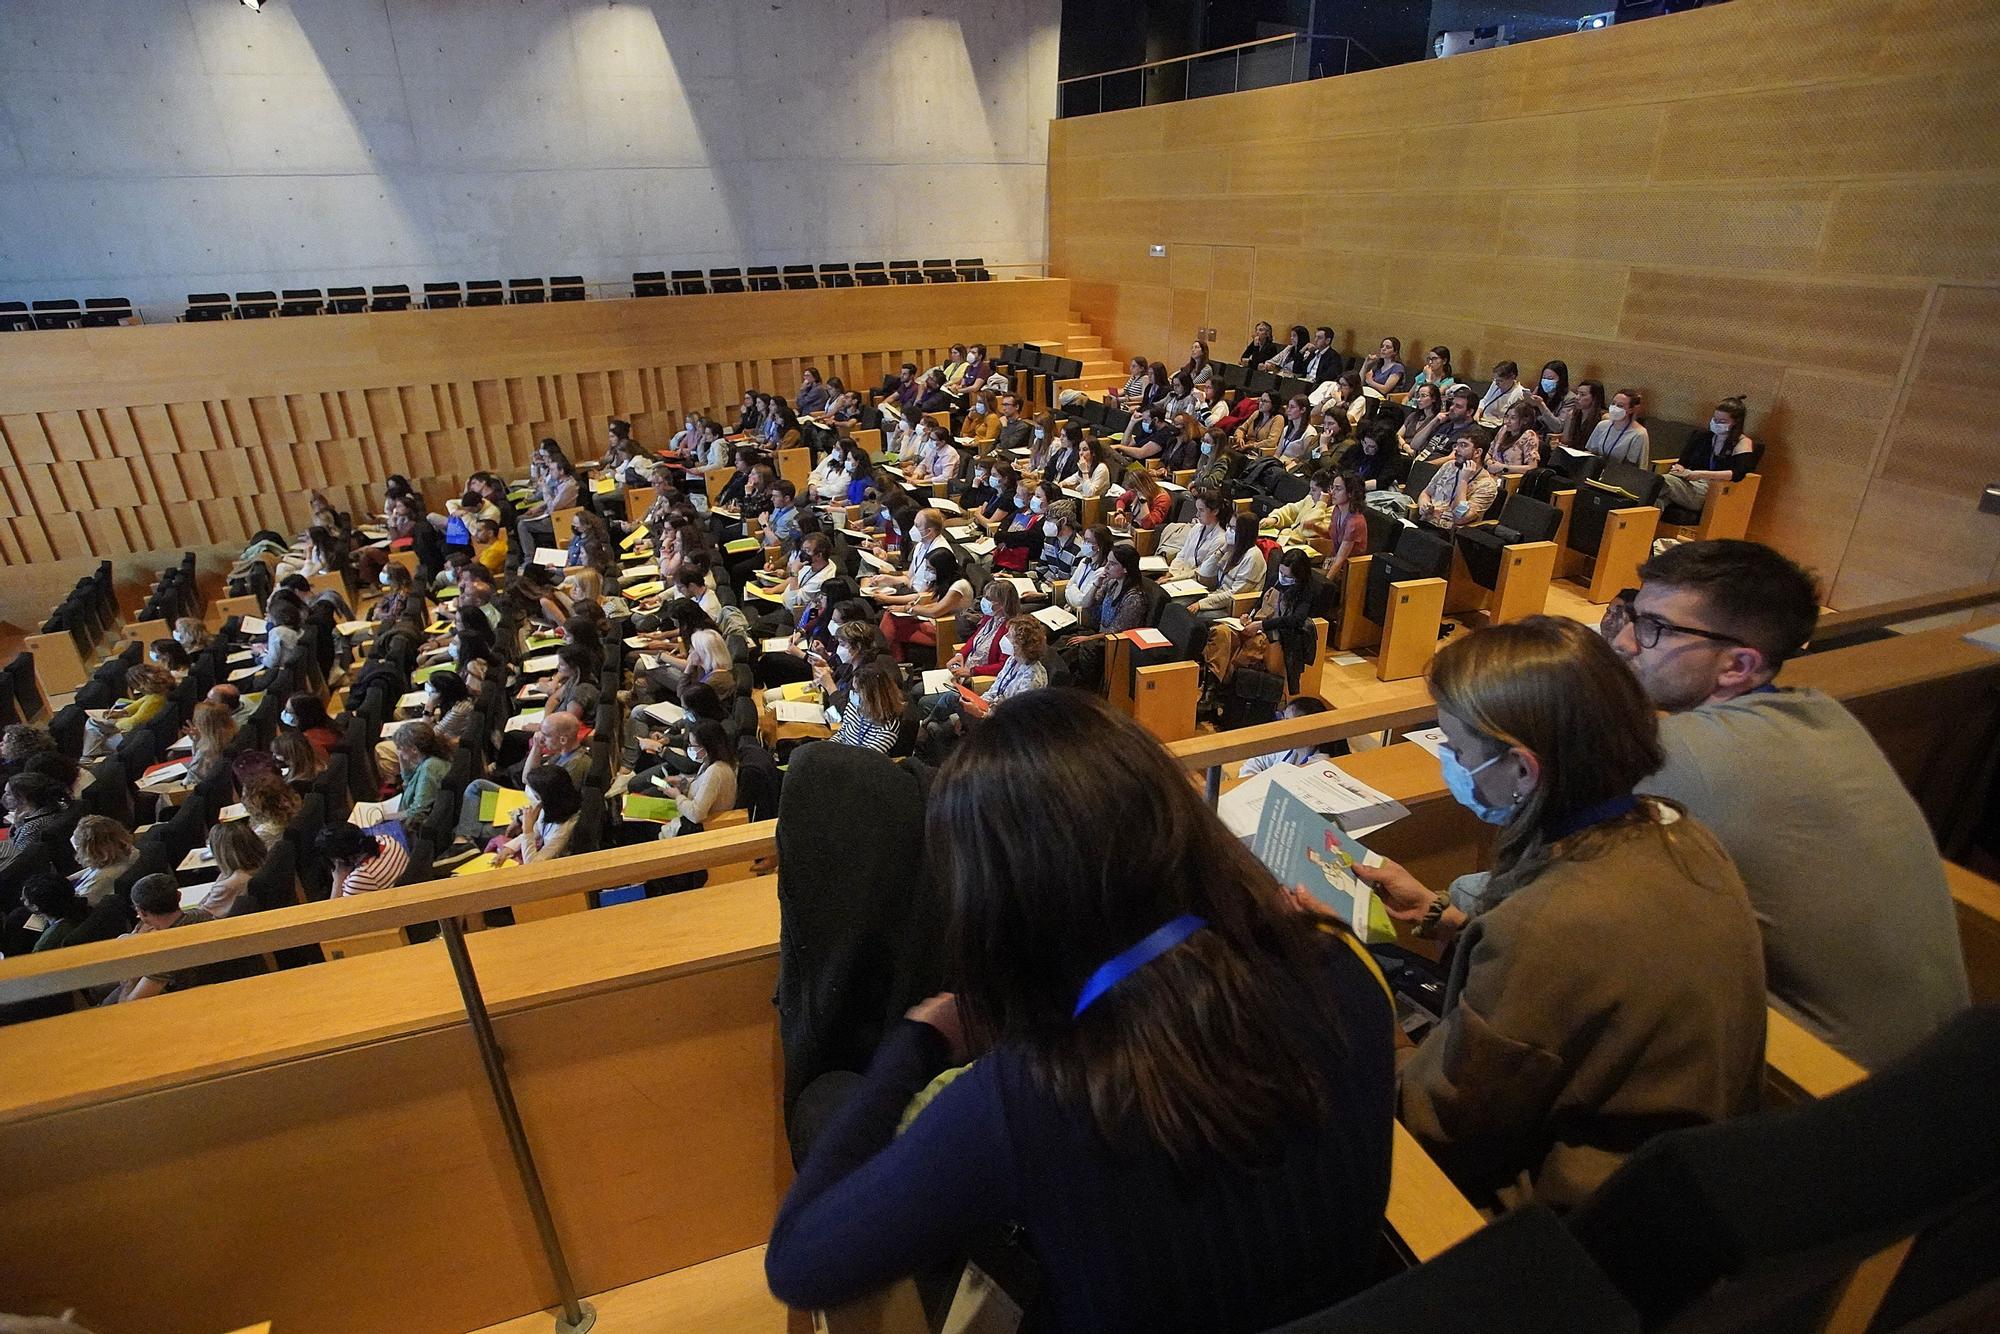 Celebració del 28è Congrés de Medicina Familiar i Comunitària a Girona